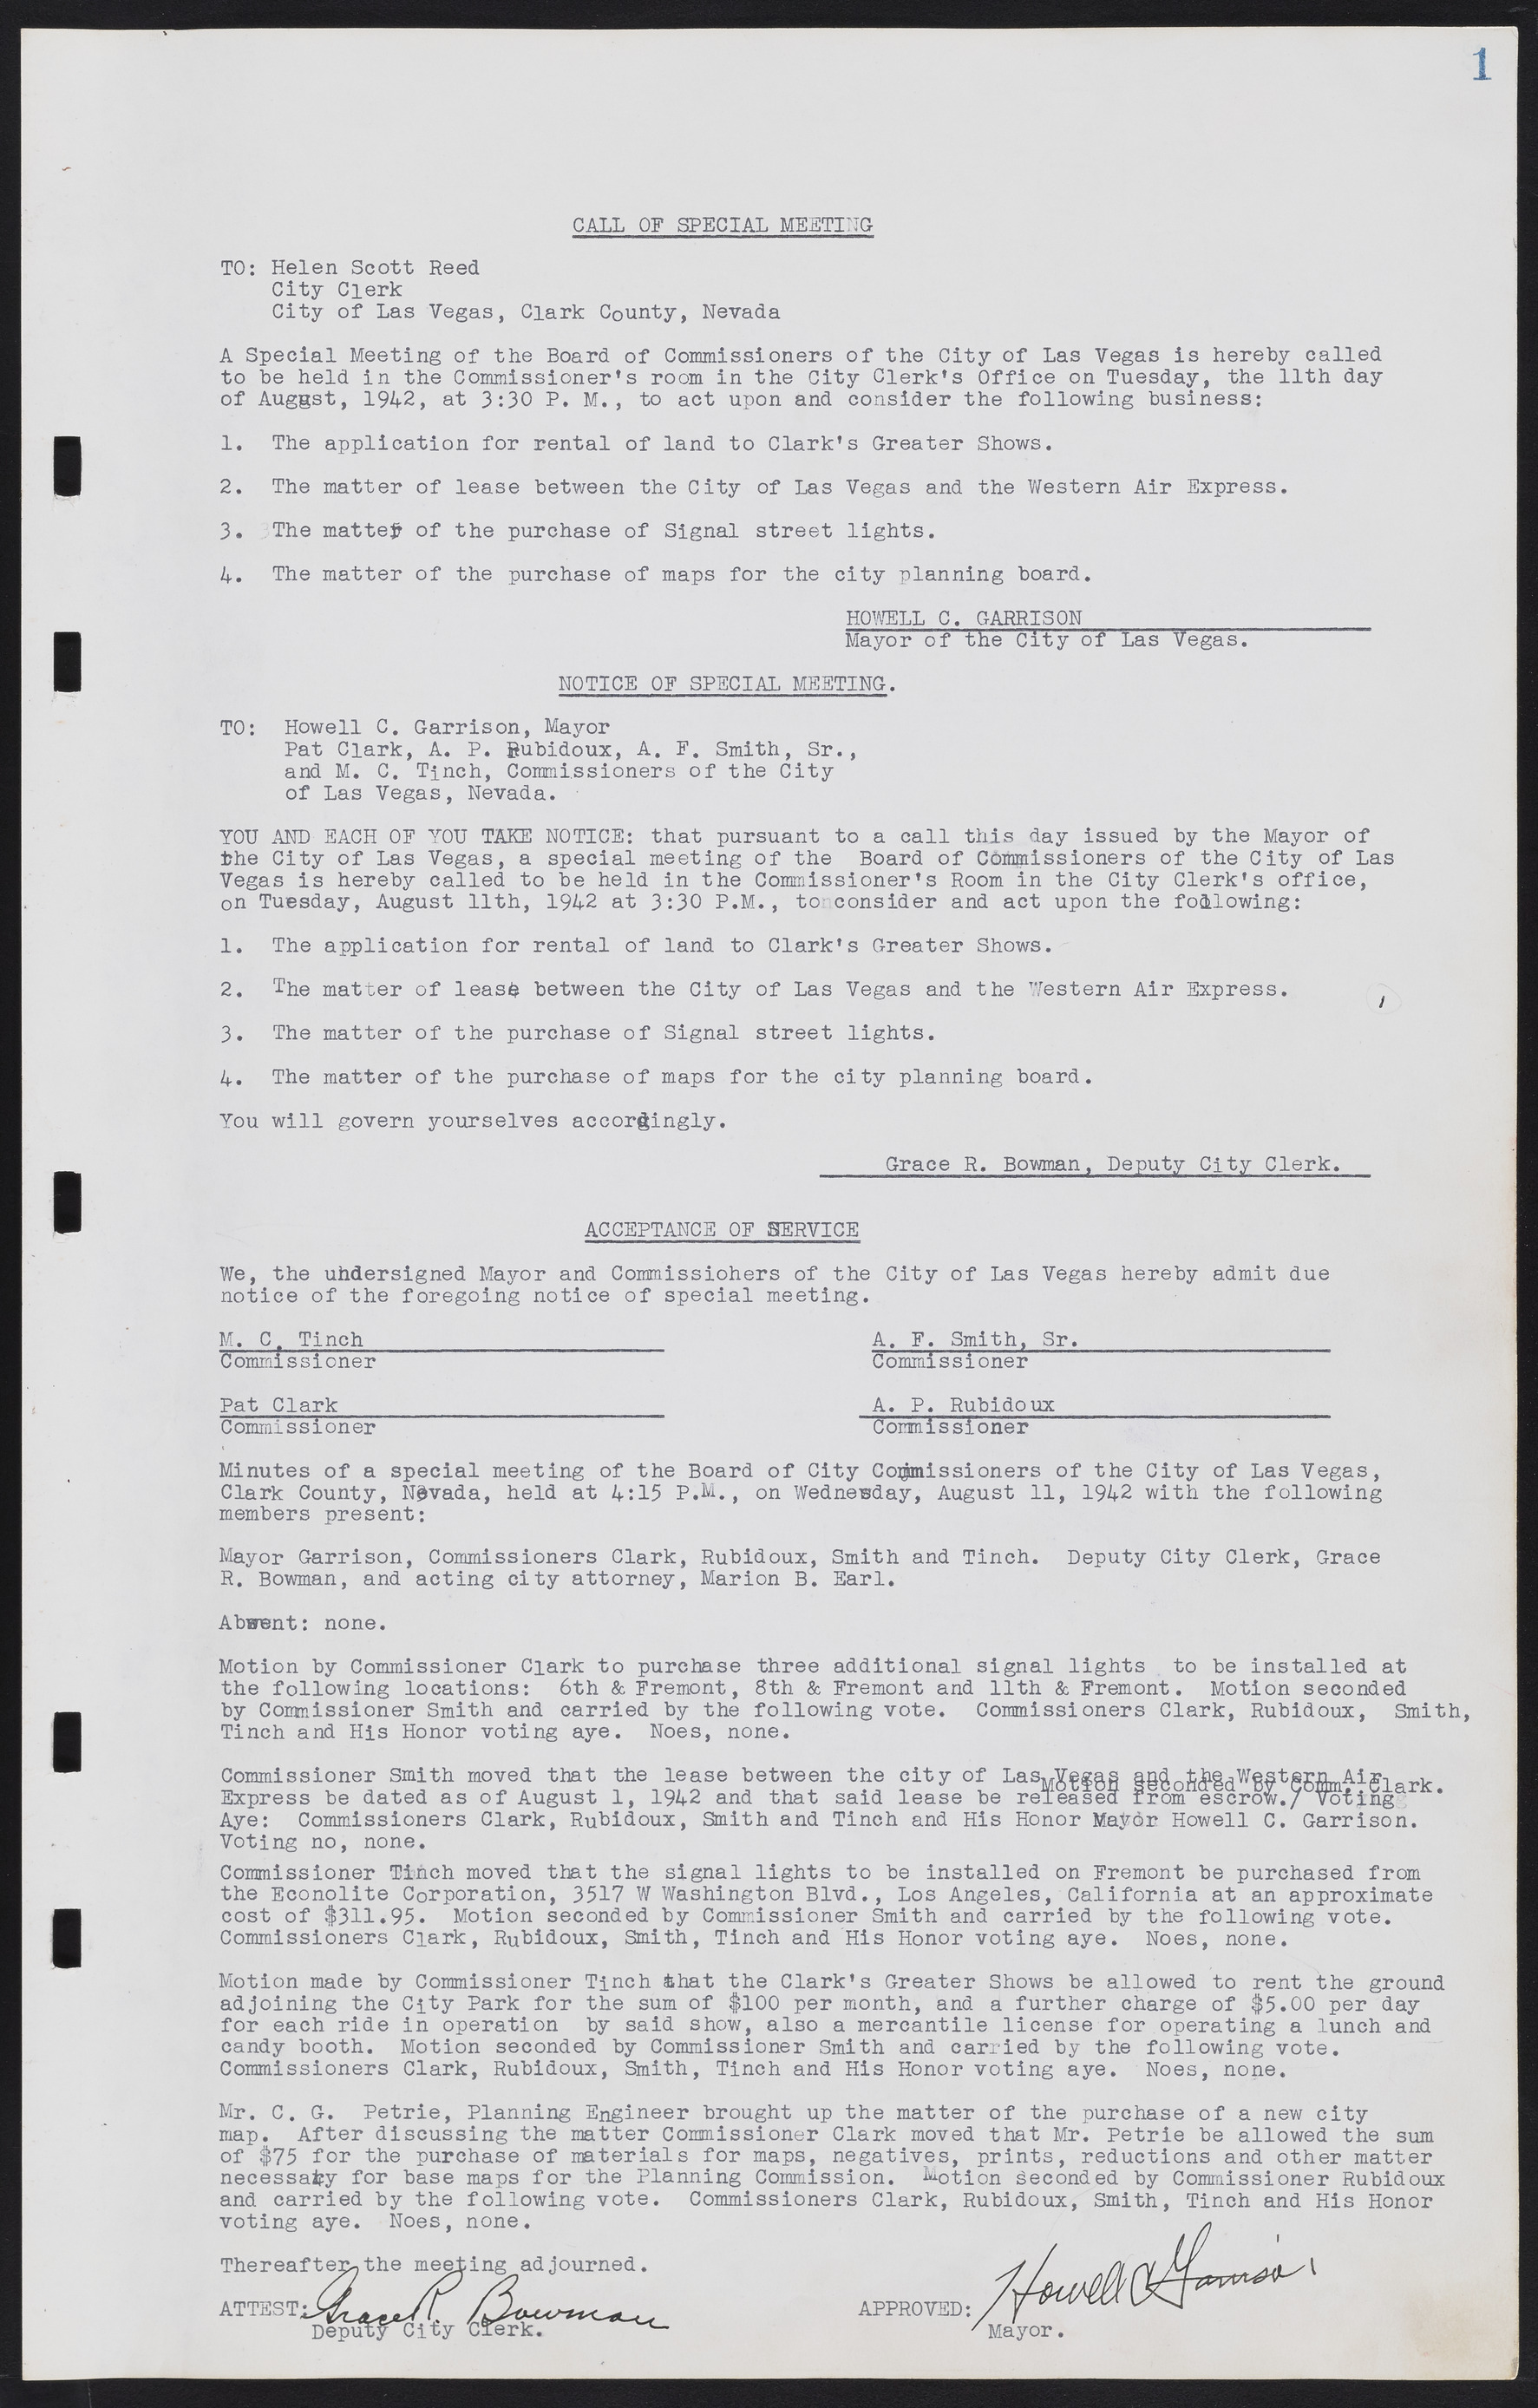 Las Vegas City Commission Minutes, August 11, 1942 to December 30, 1946, lvc000005-9